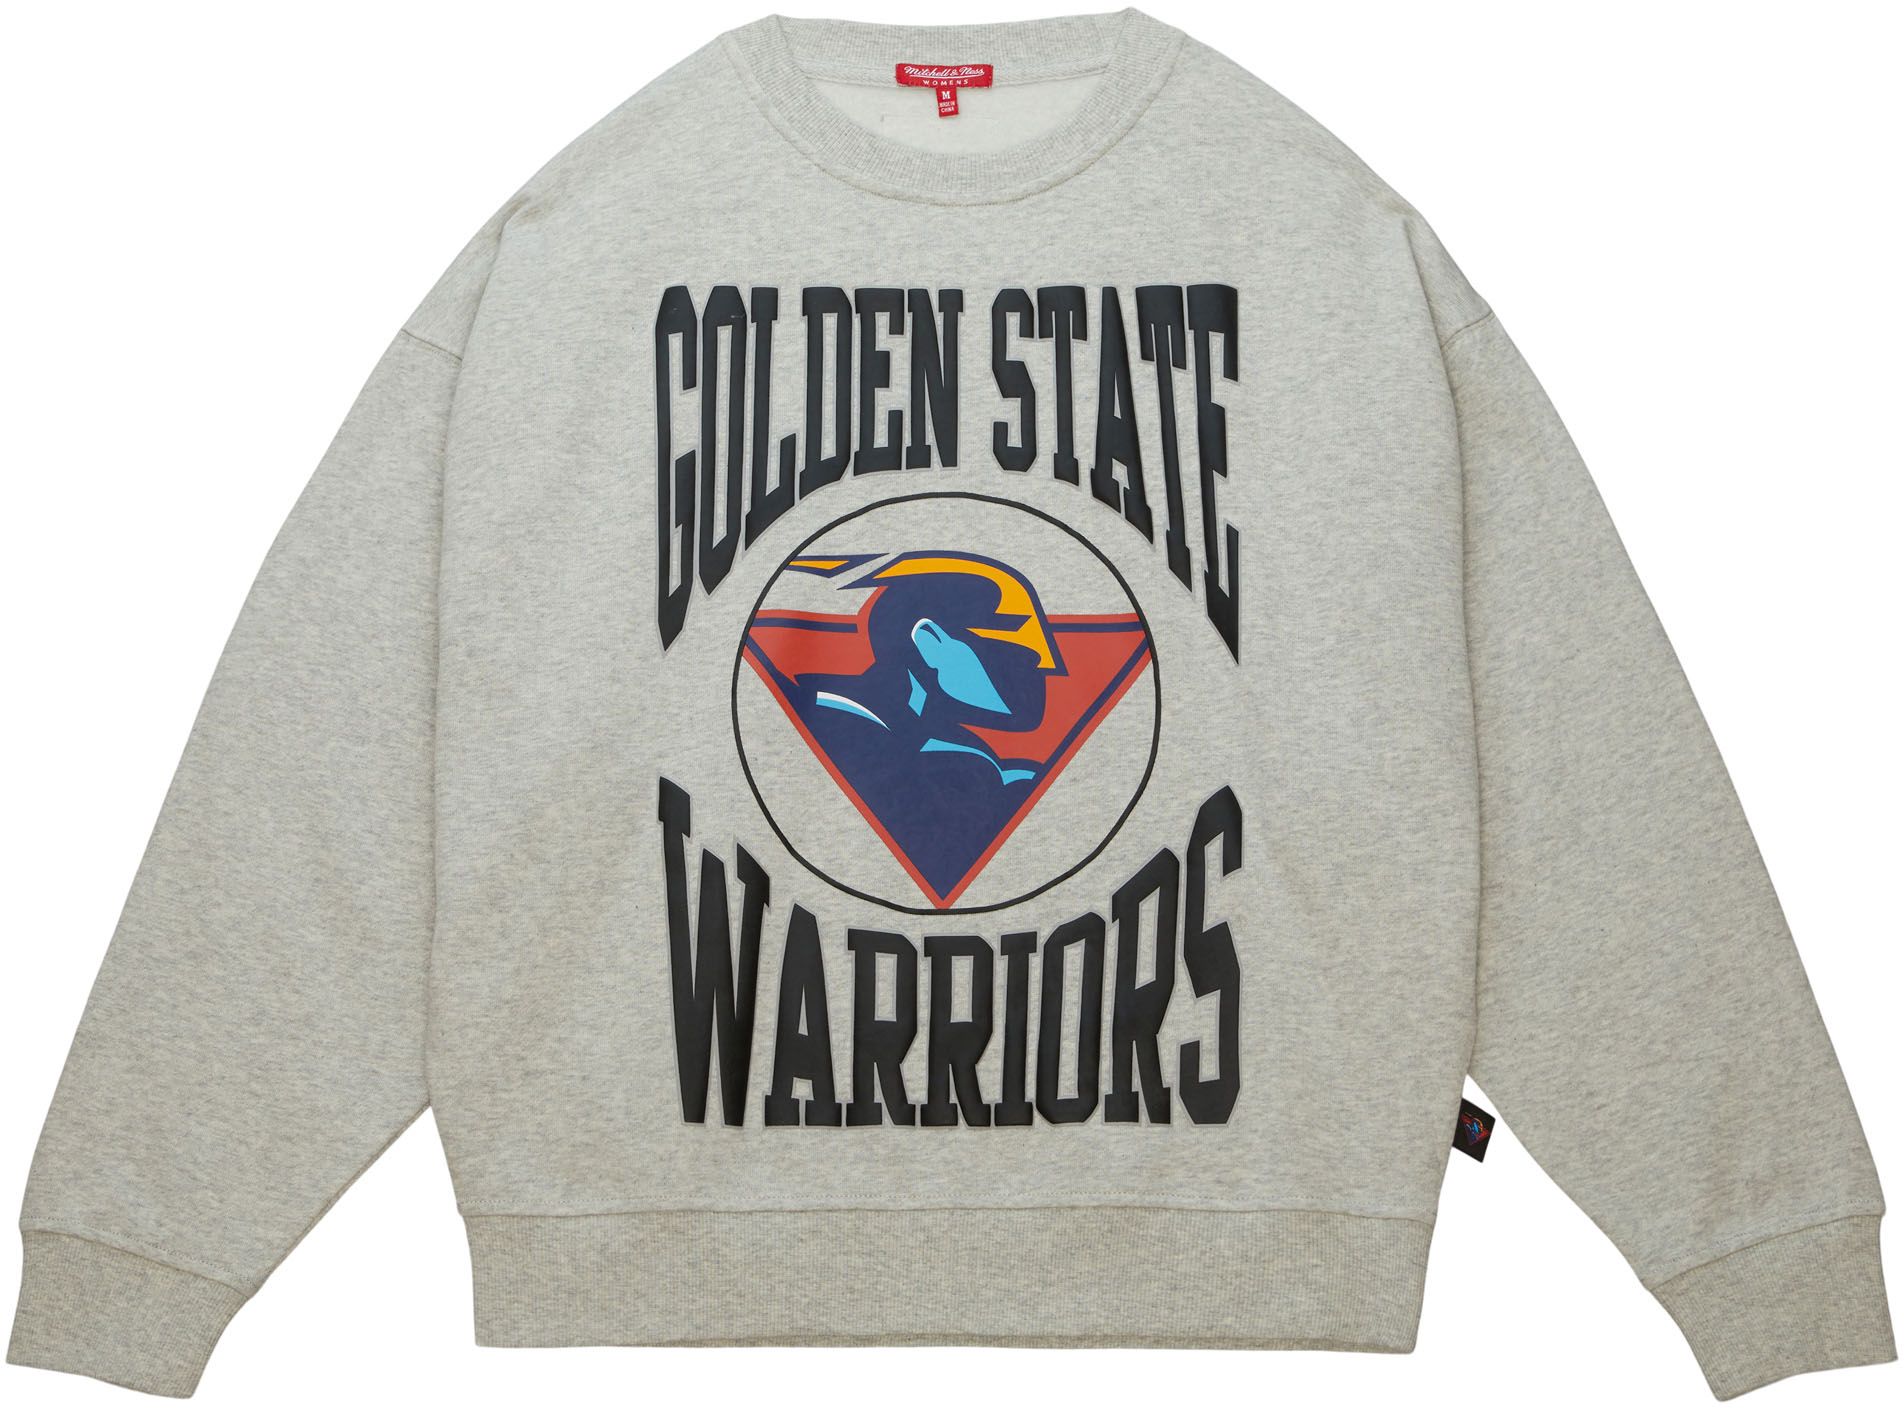  Ultra Game NBA Golden State Warriors Mens Mesh Button Down  Baseball Jersey Tee Shirt, Black, Small : Sports & Outdoors